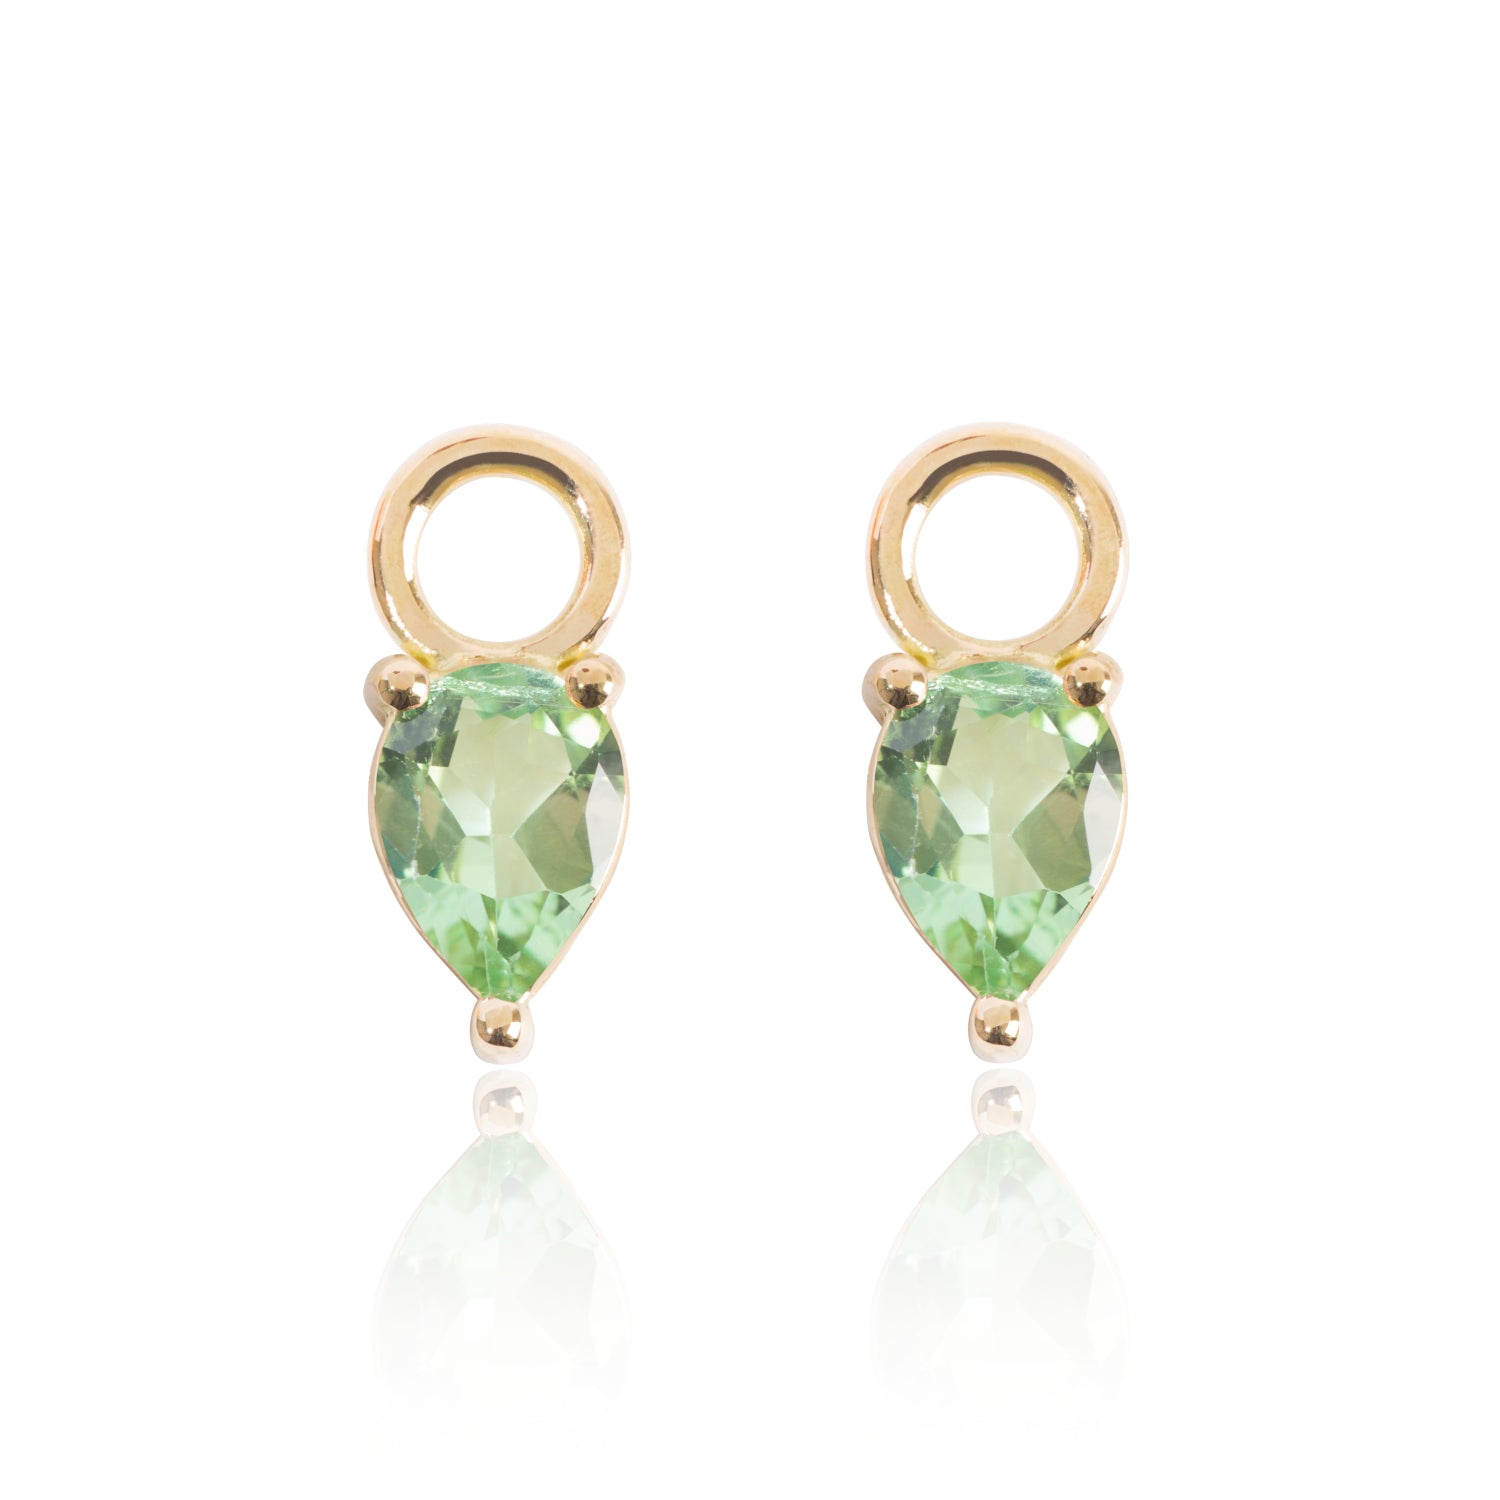 Light Green Tourmaline Earring Pendants by McFarlane Fine Jewellery